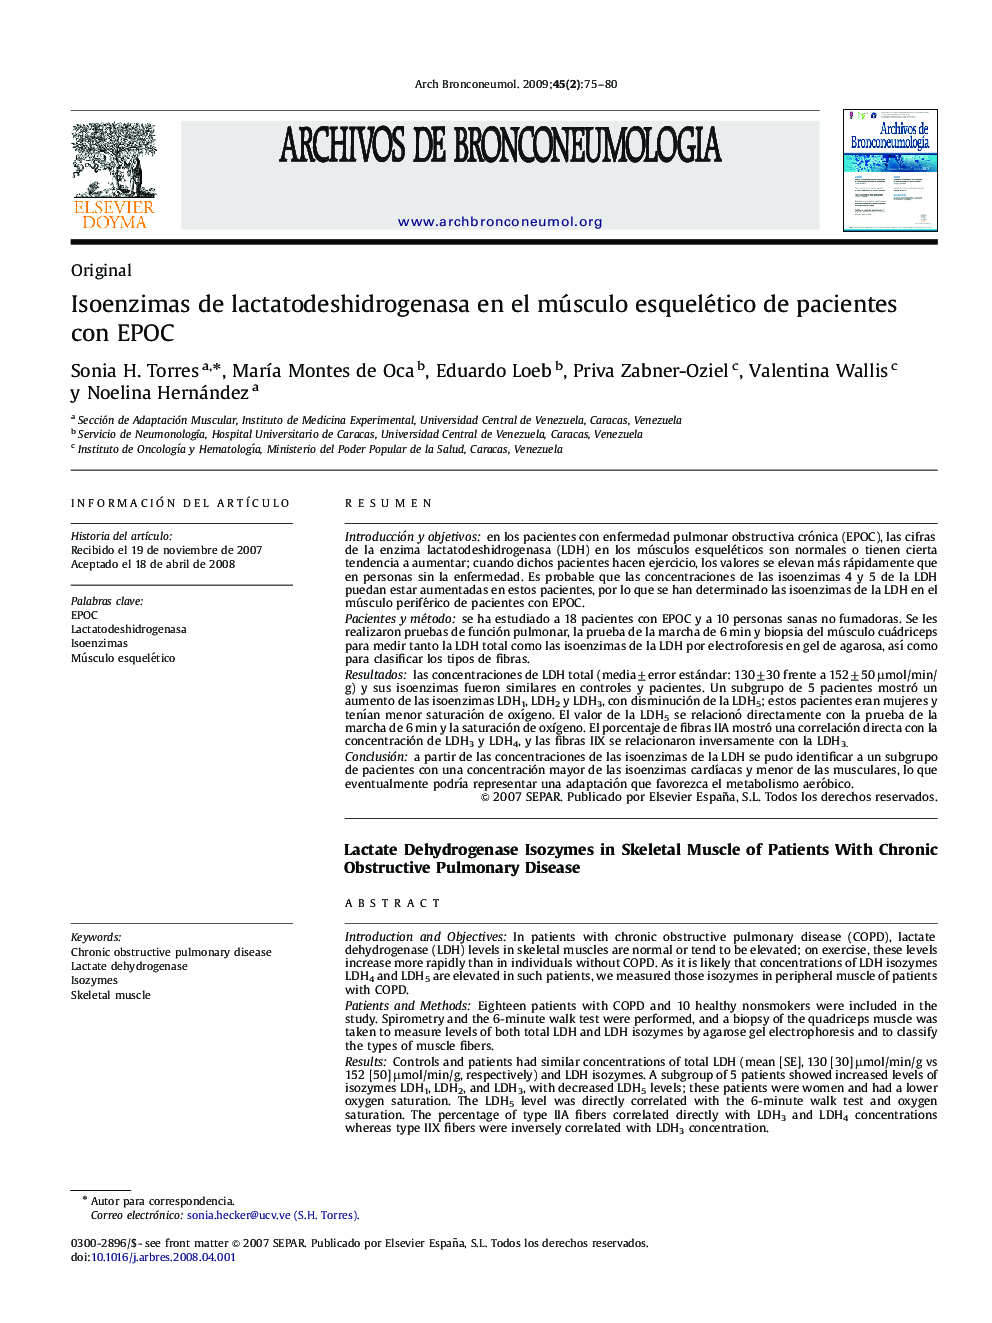 Isoenzimas de lactatodeshidrogenasa en el músculo esquelético de pacientes con EPOC